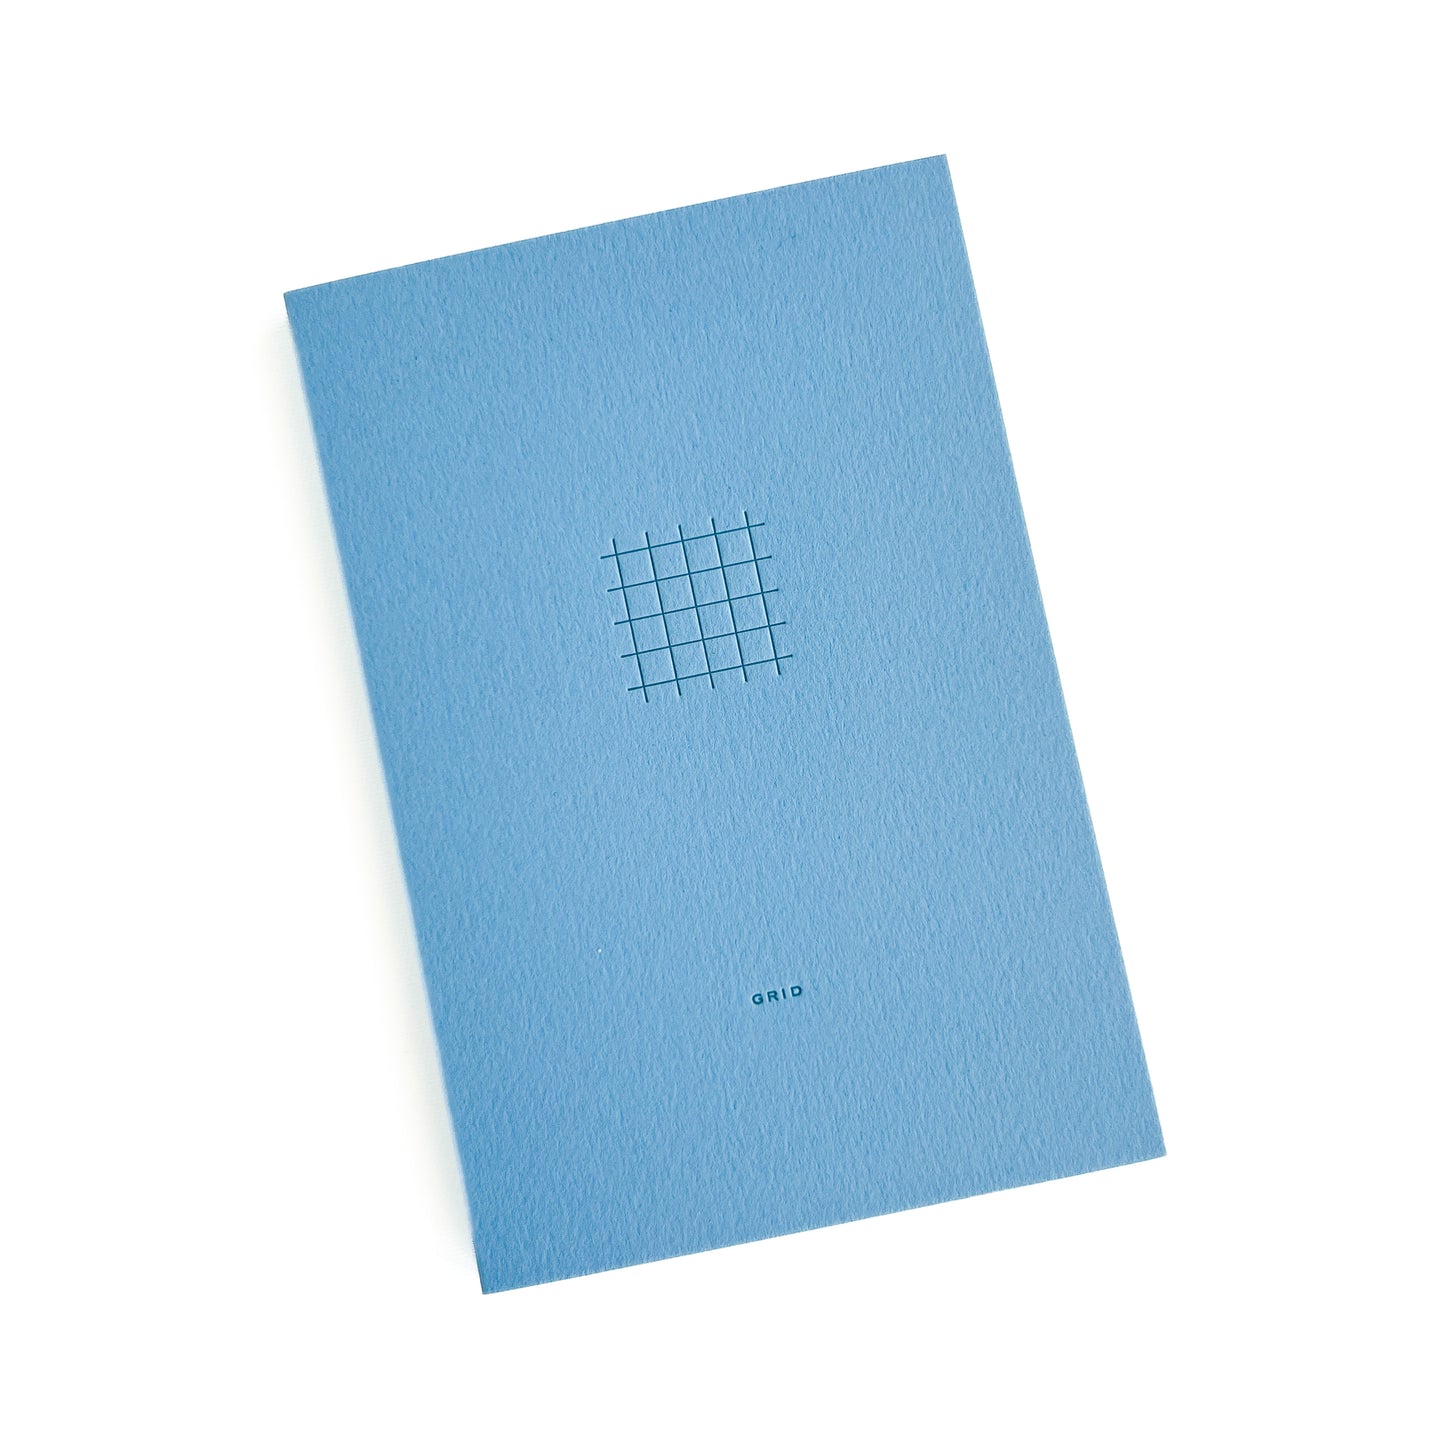 Grid Pocket notebook in blue